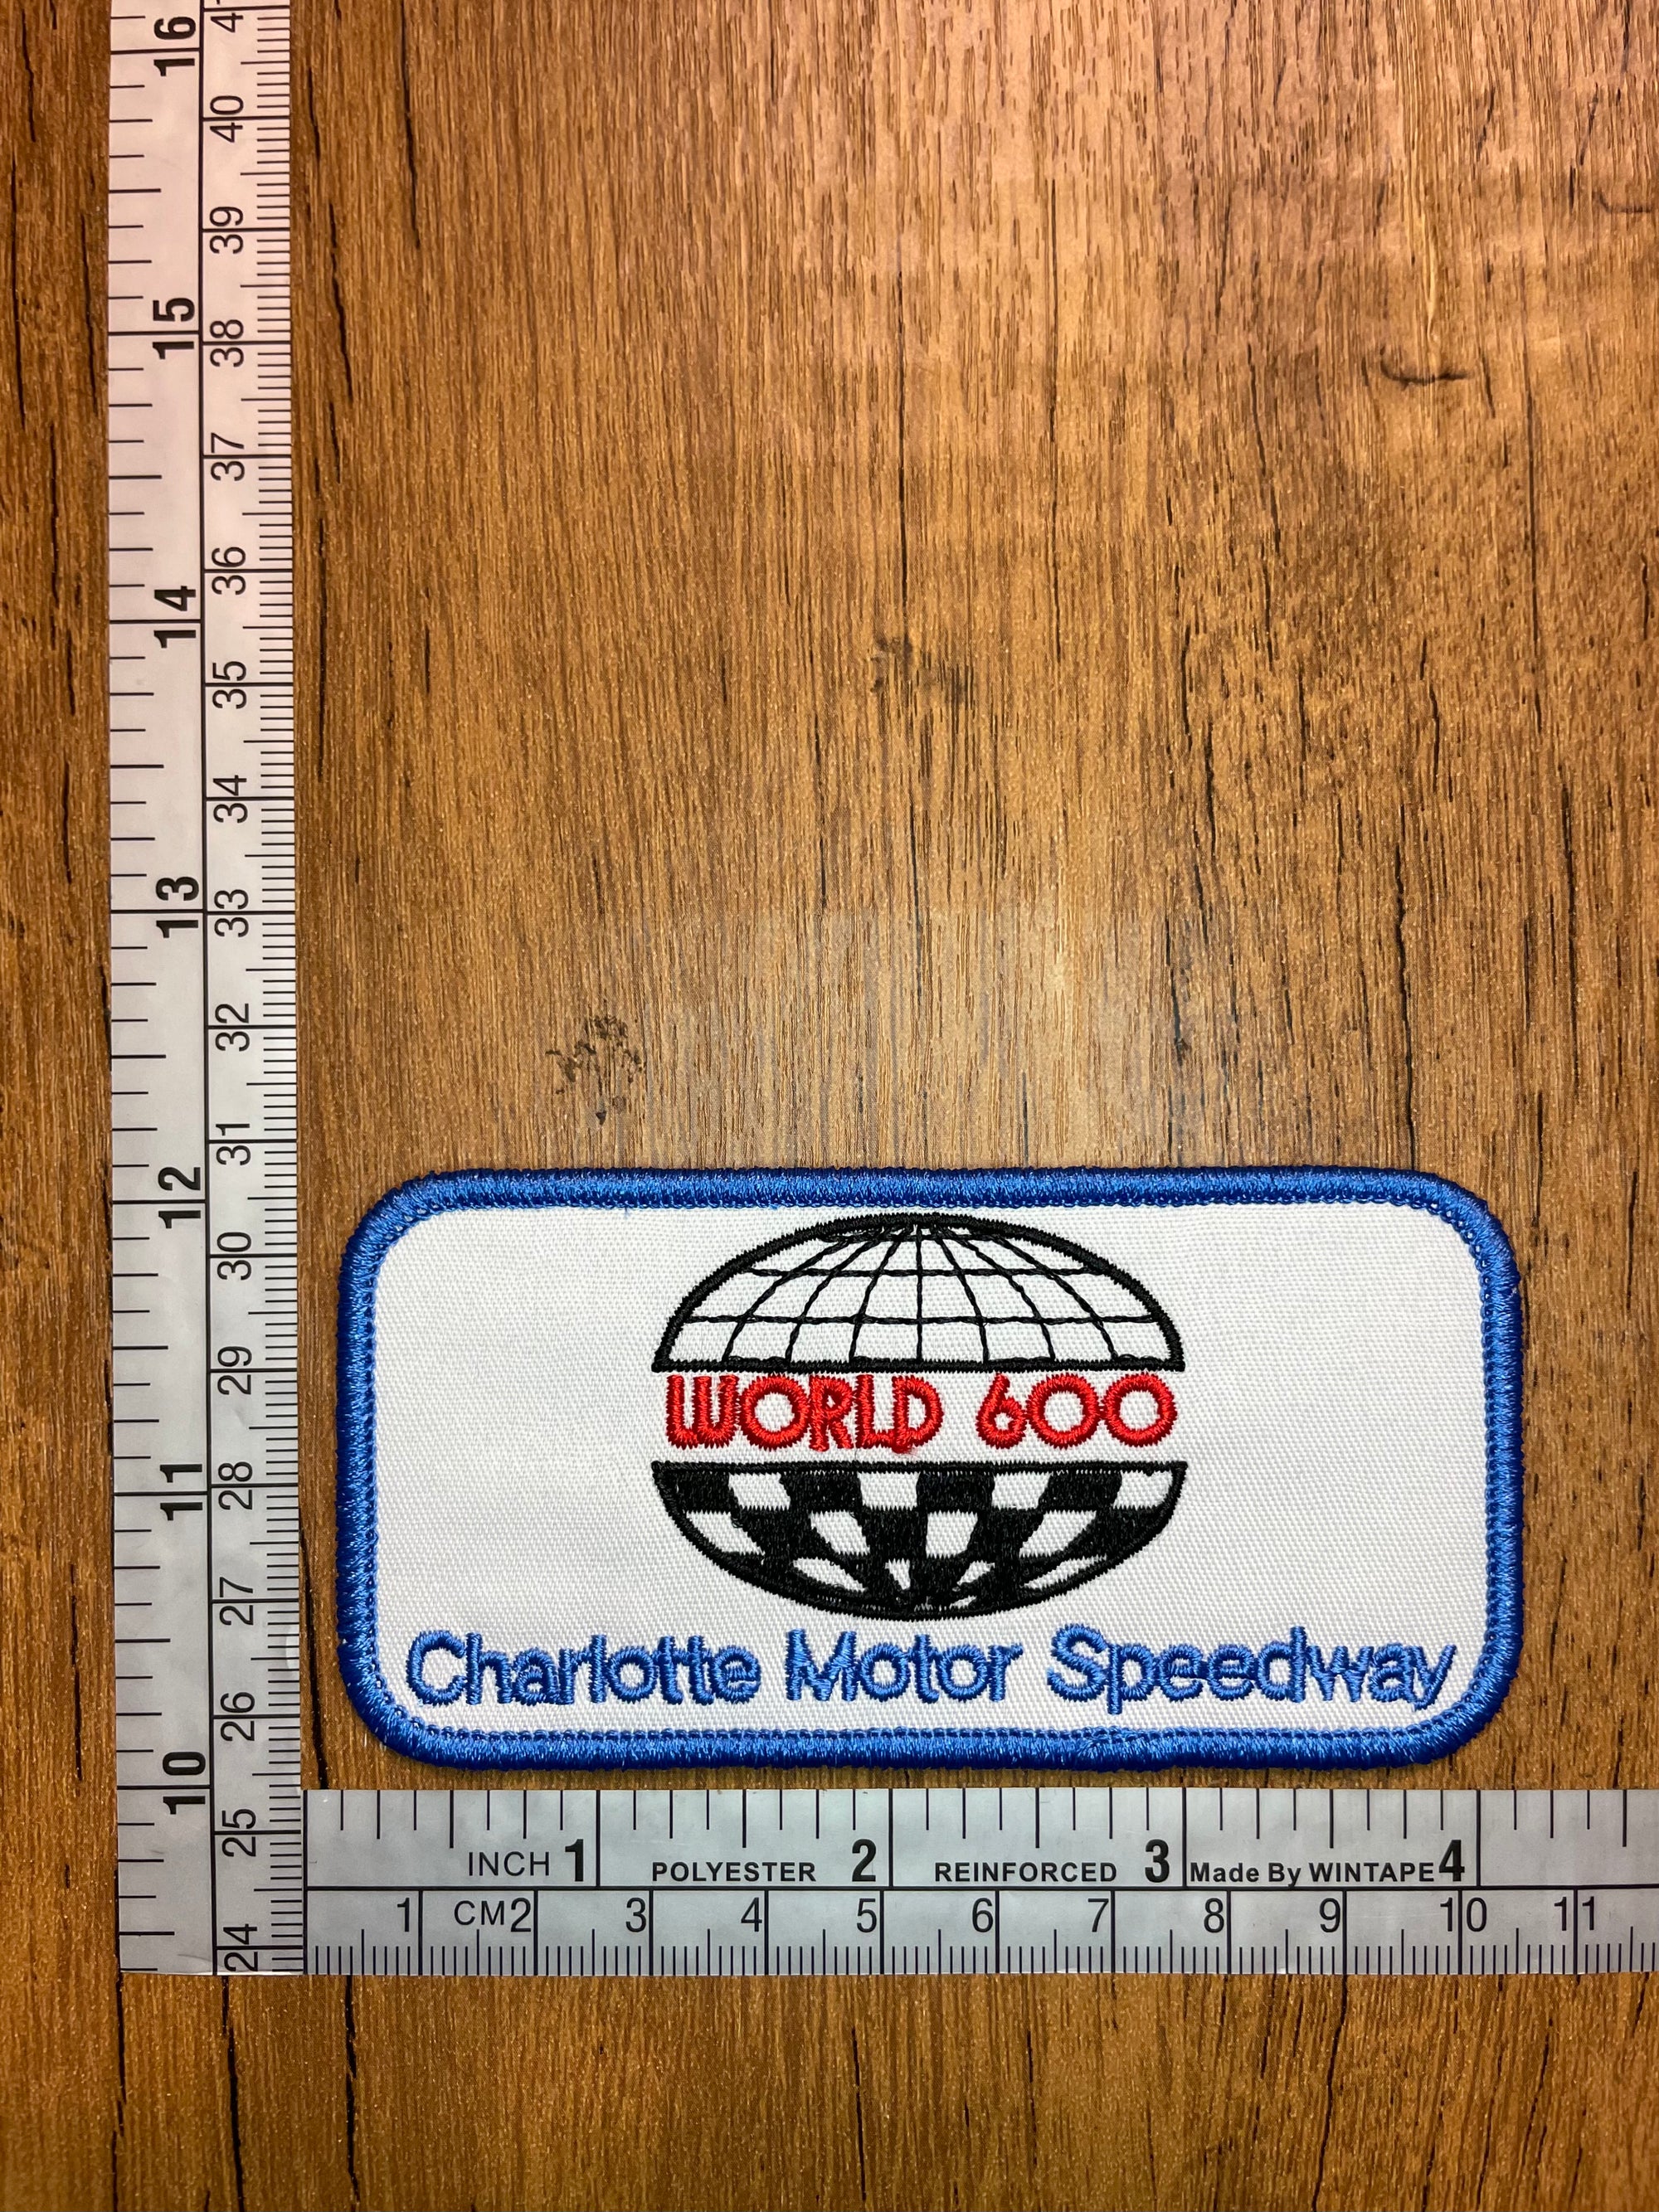 World 600 Charlotte Motor Speedway